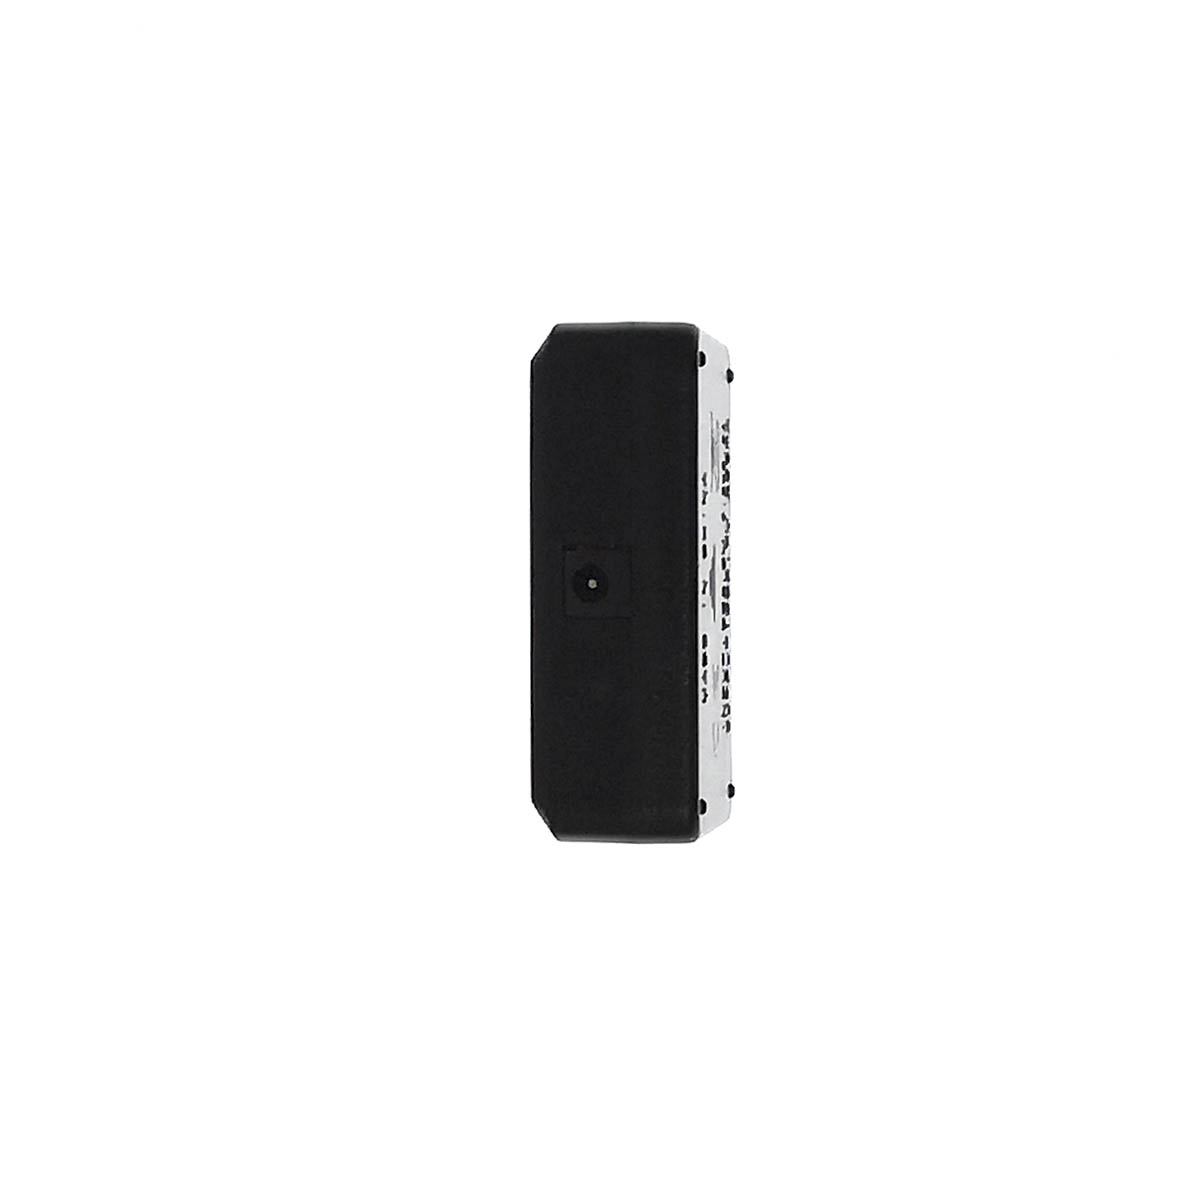 Зарядное устройство для квадрокоптеров, 3.7V, 4 порта, цвет черный